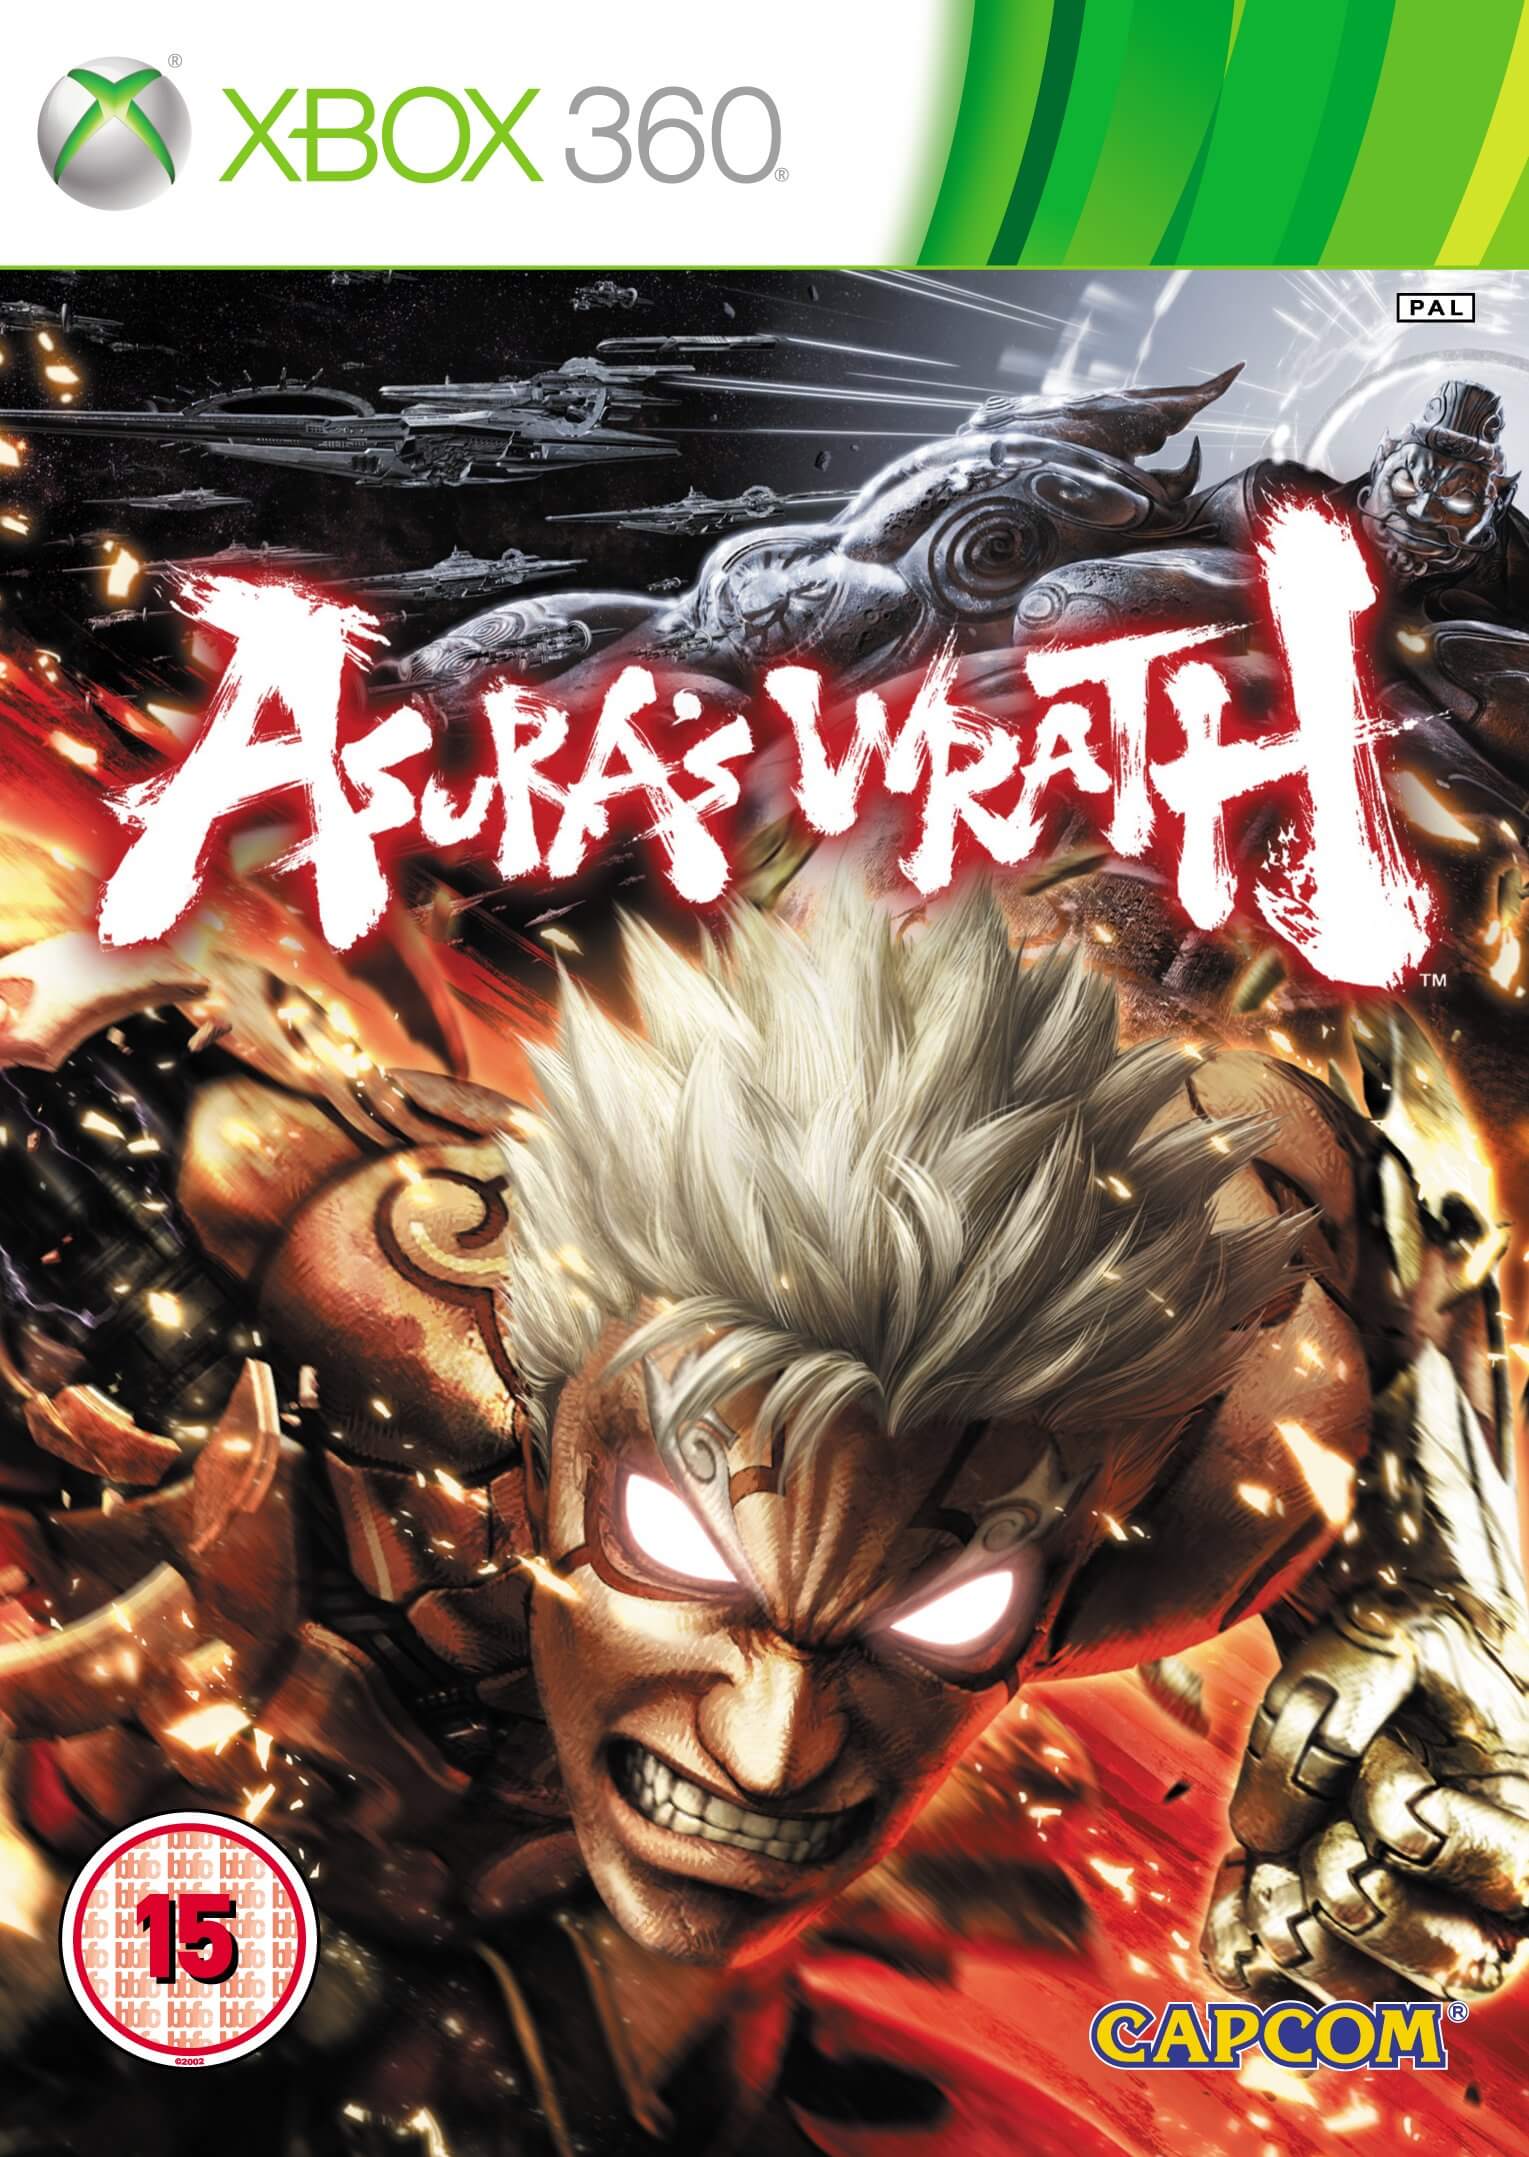 Asura’s Wrath